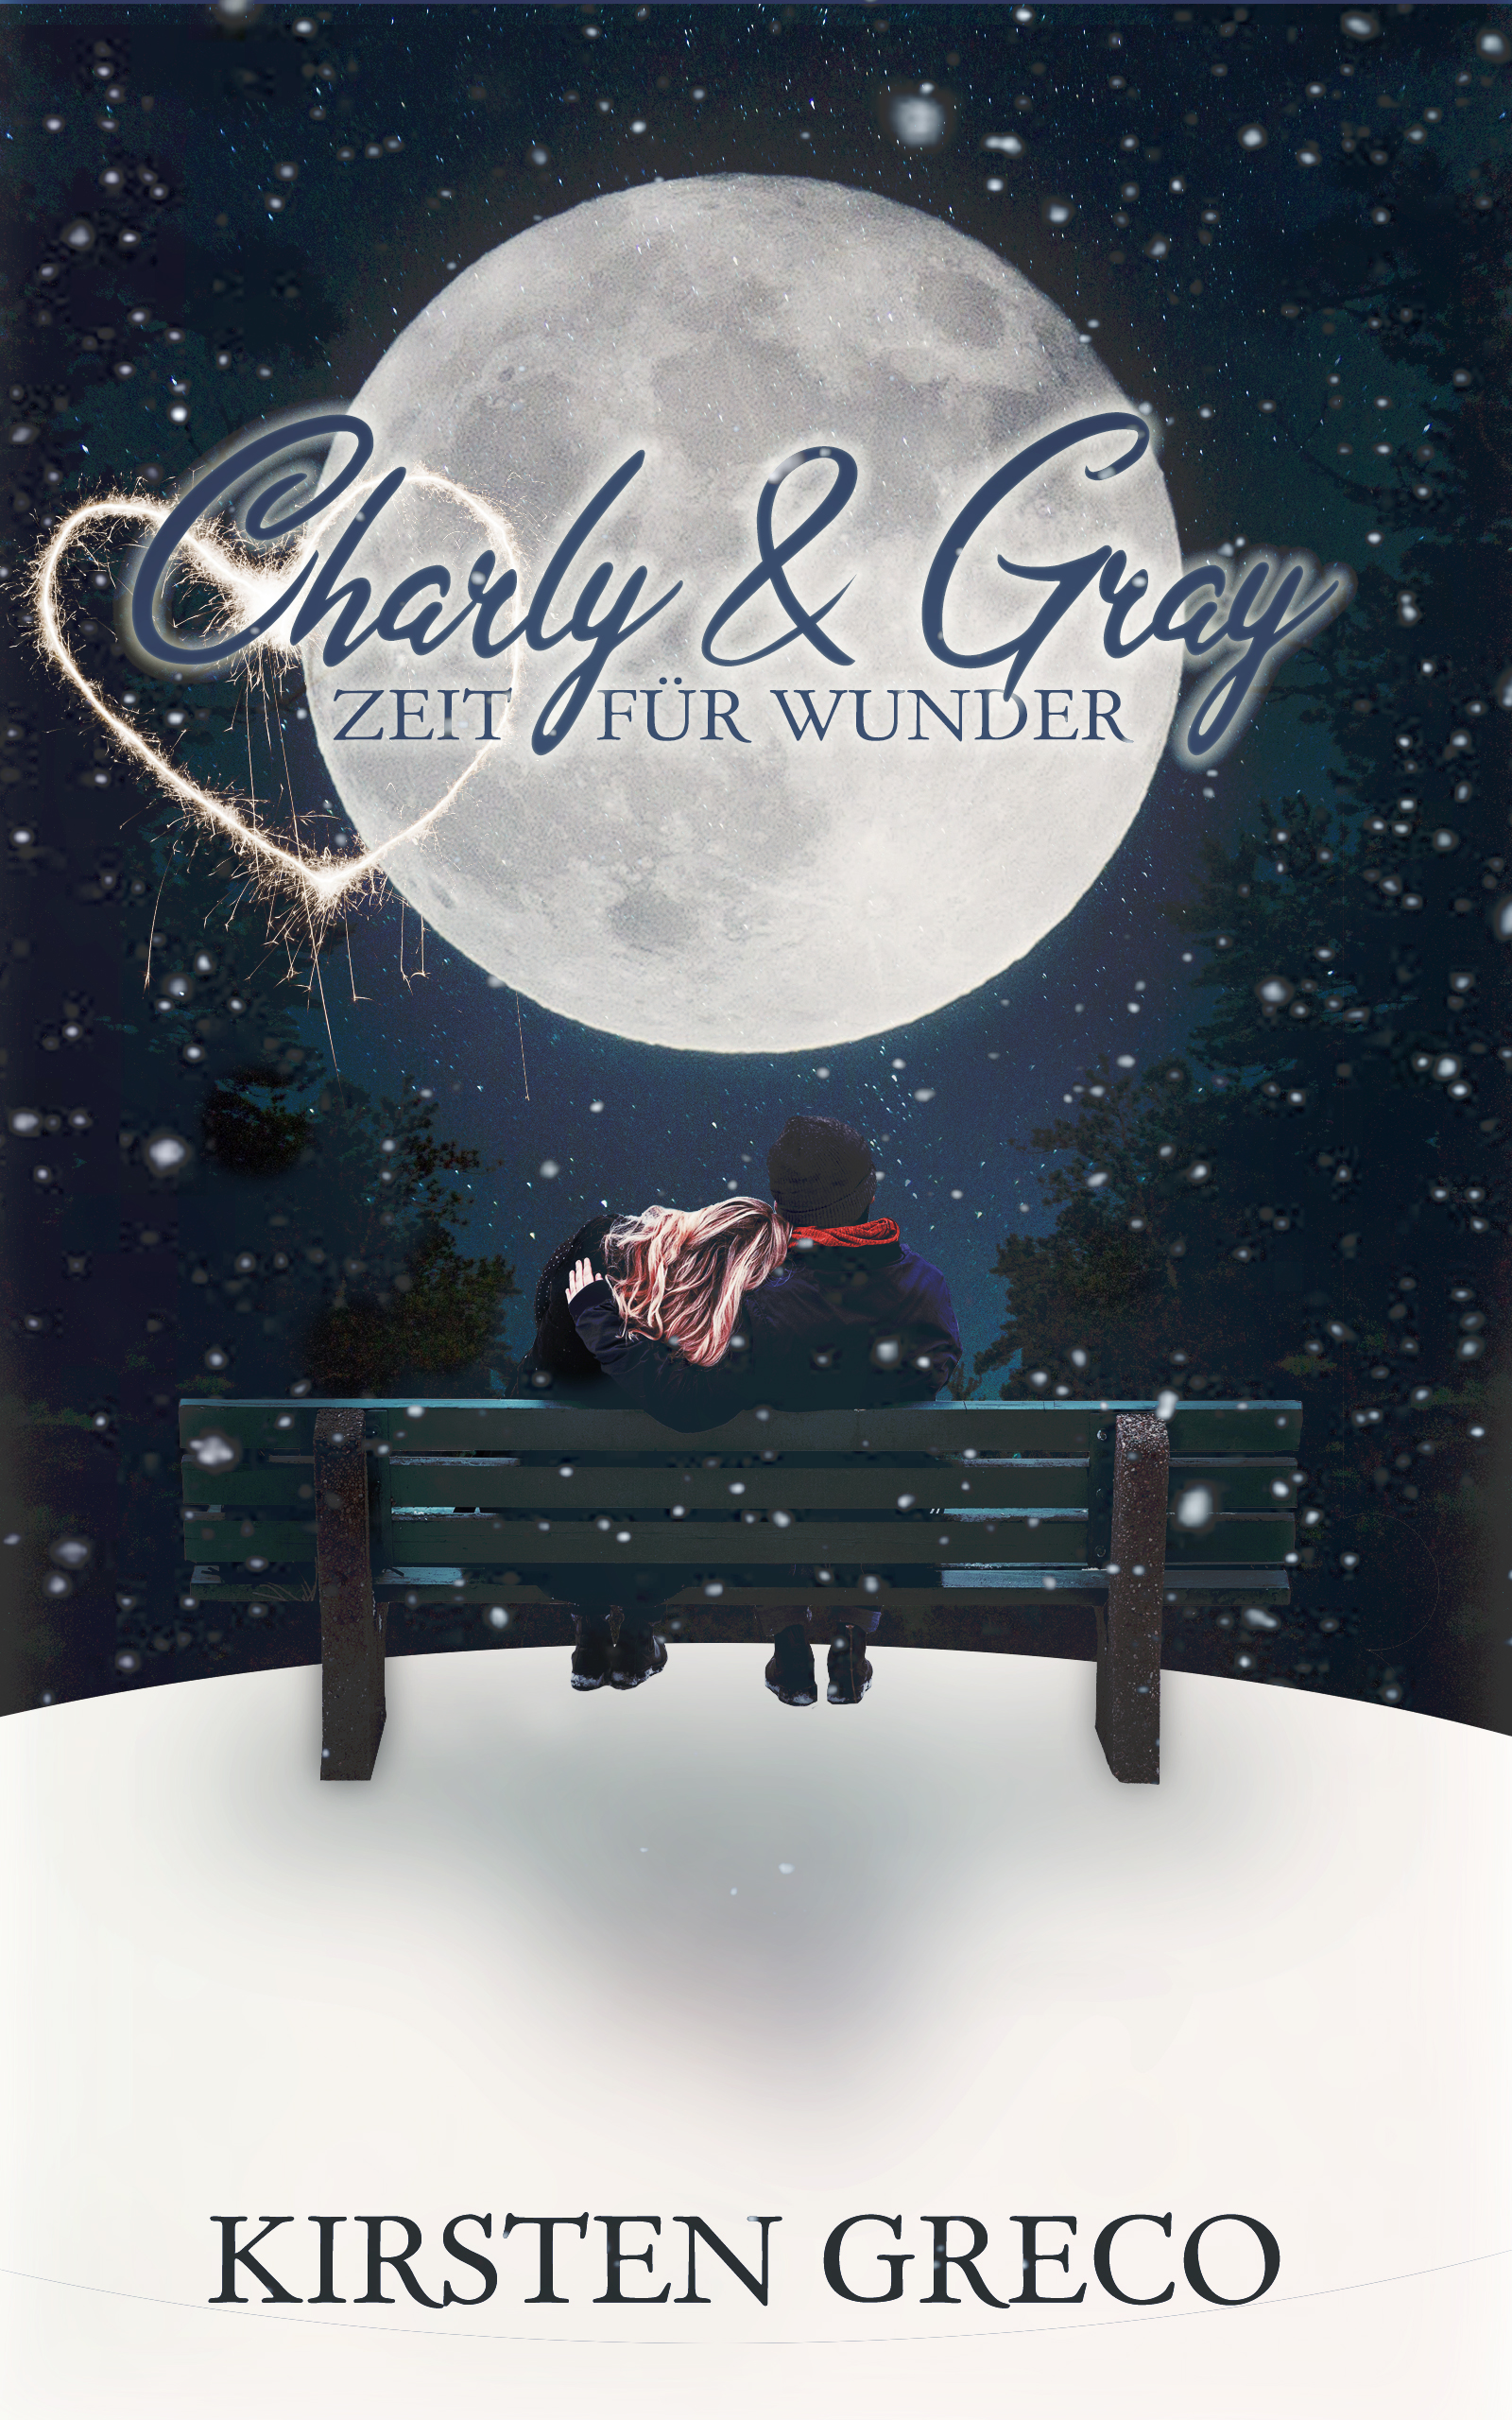 Charly & Gray – Zeit für Wunder